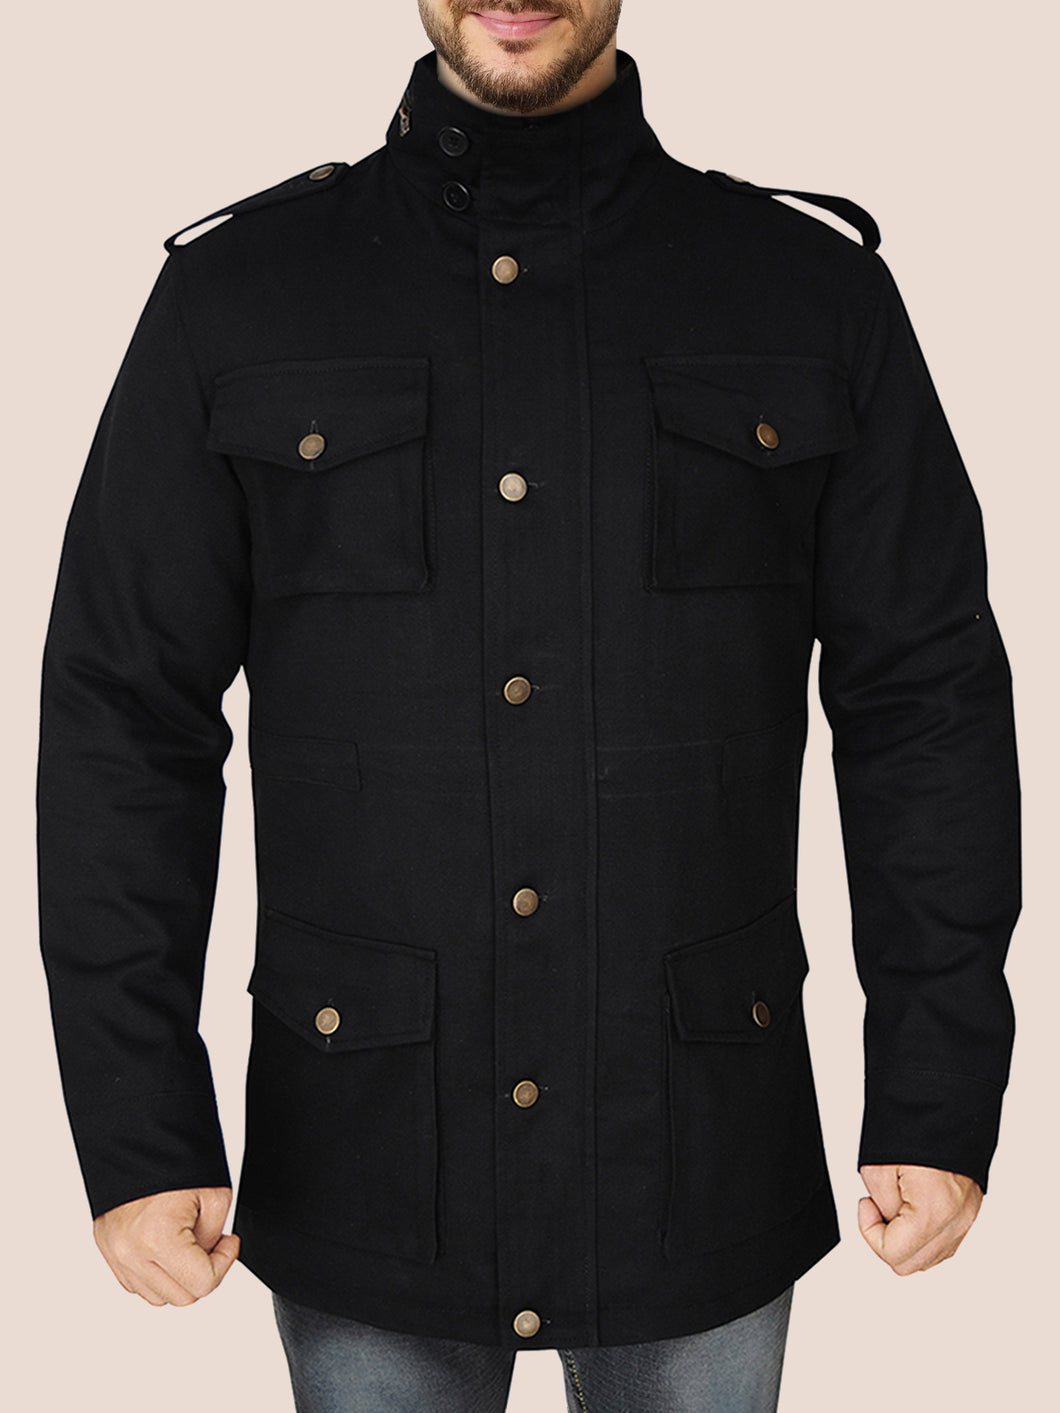 Men's Classic Black Cotton Jacket